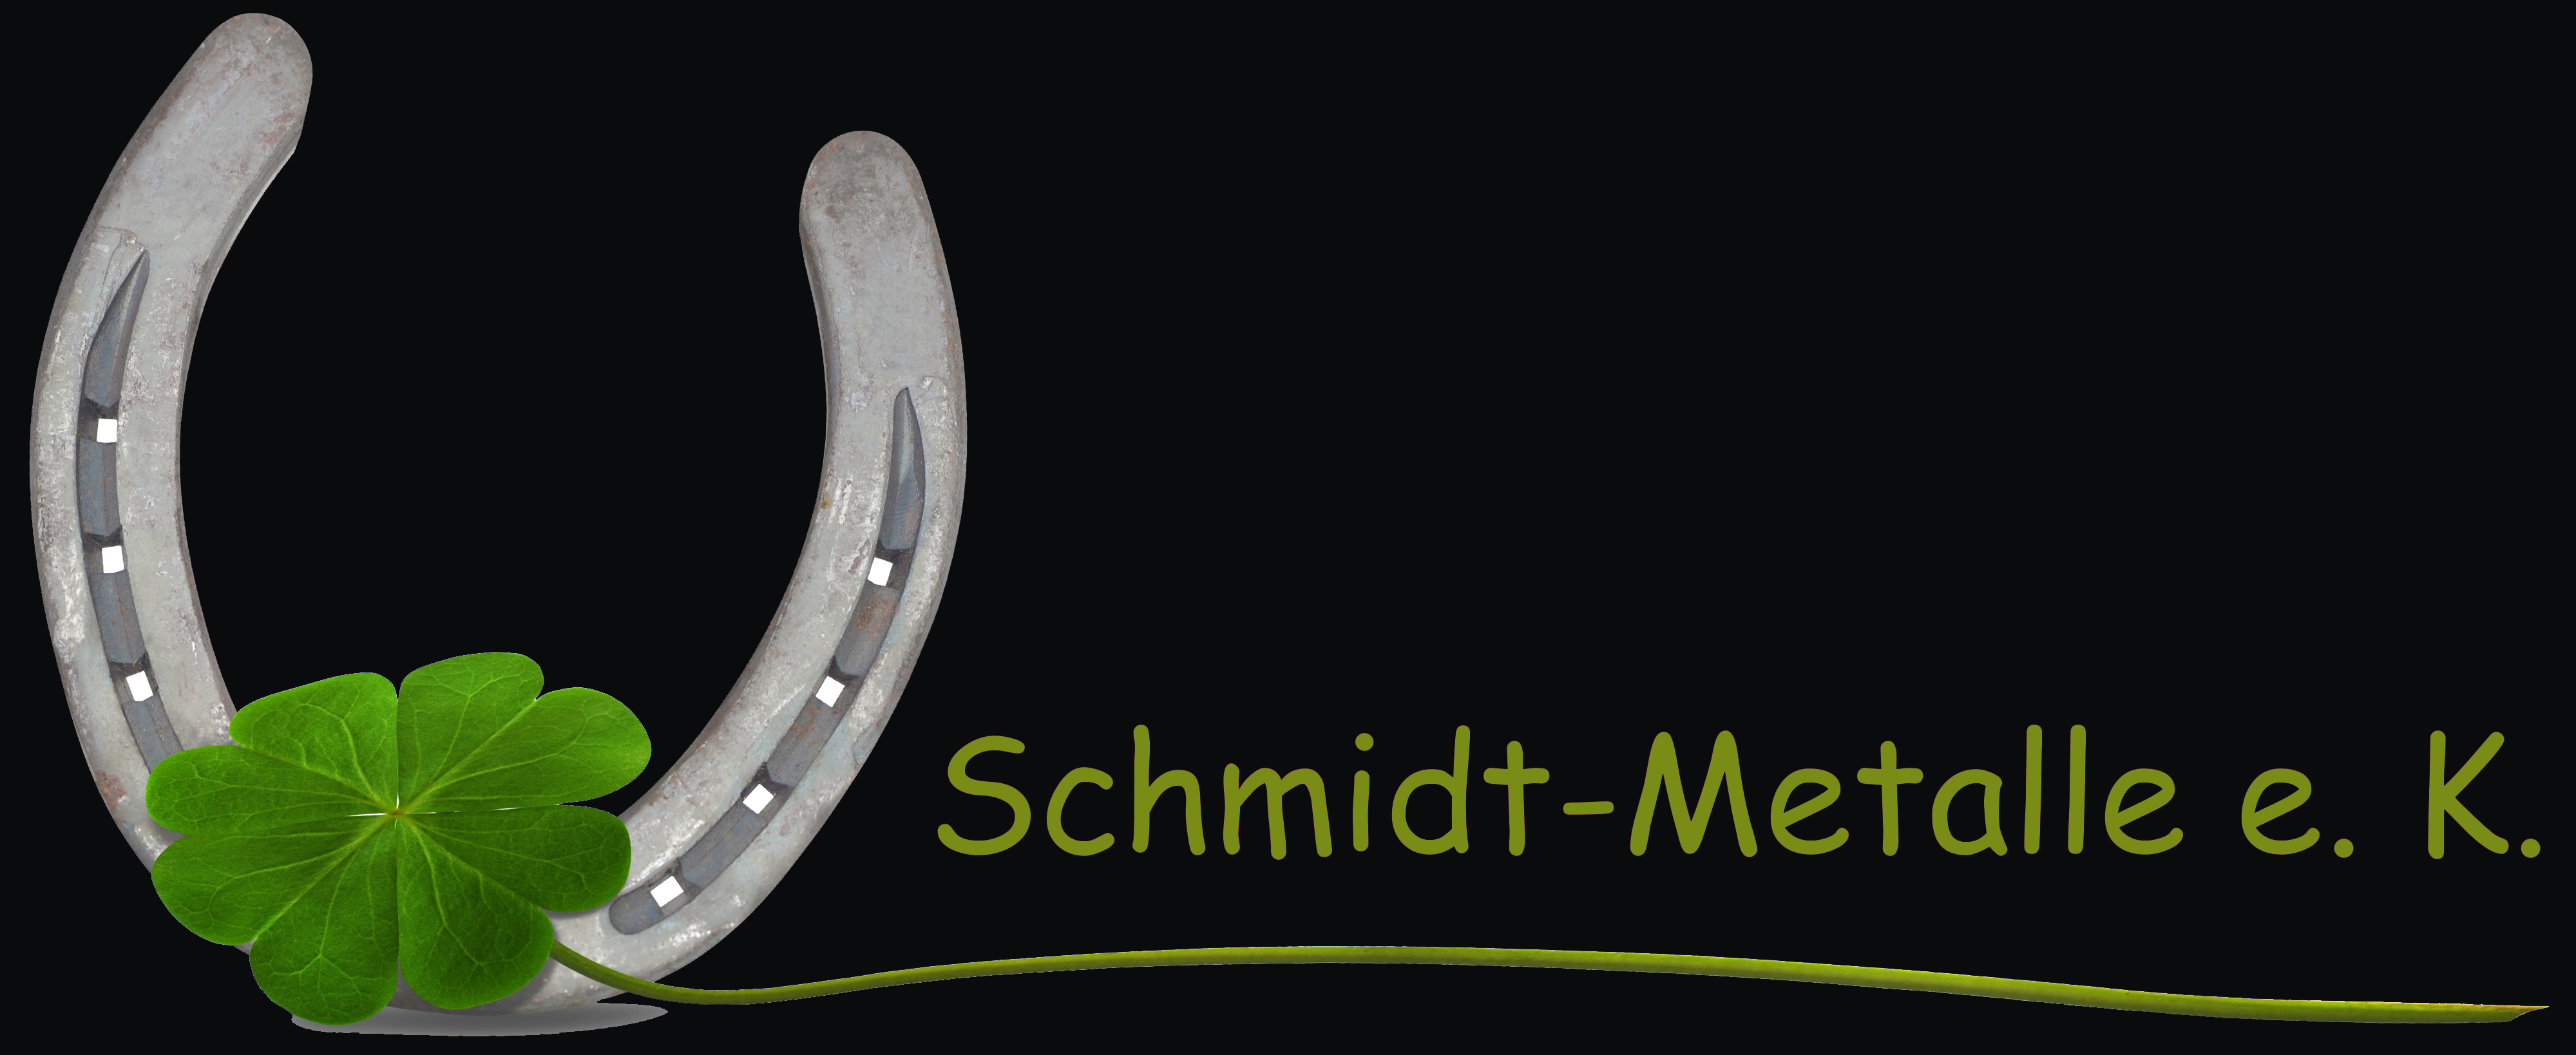 Schmidt-Metalle